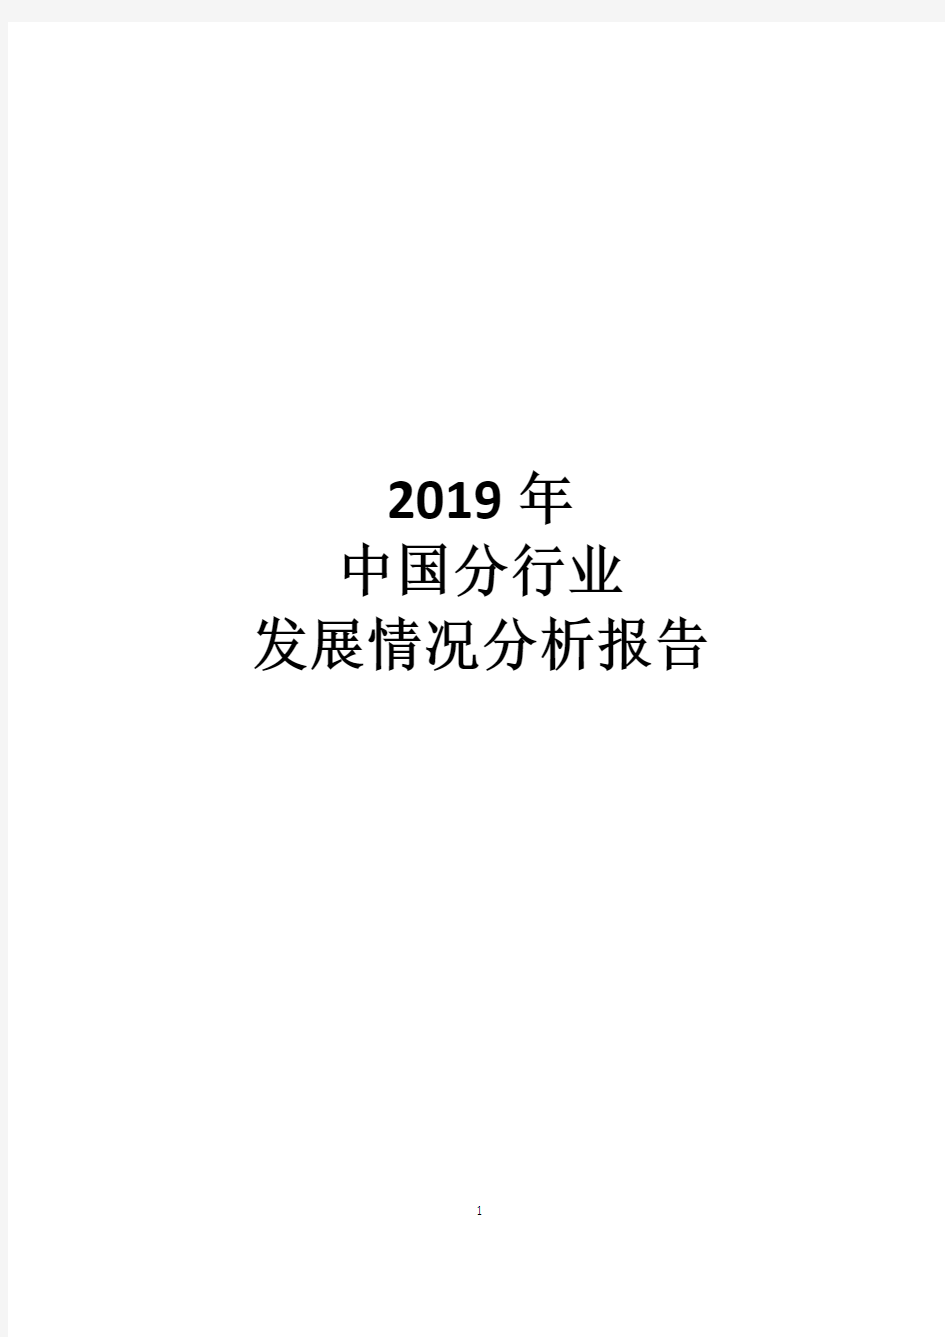 2019年中国分行业发展分析报告